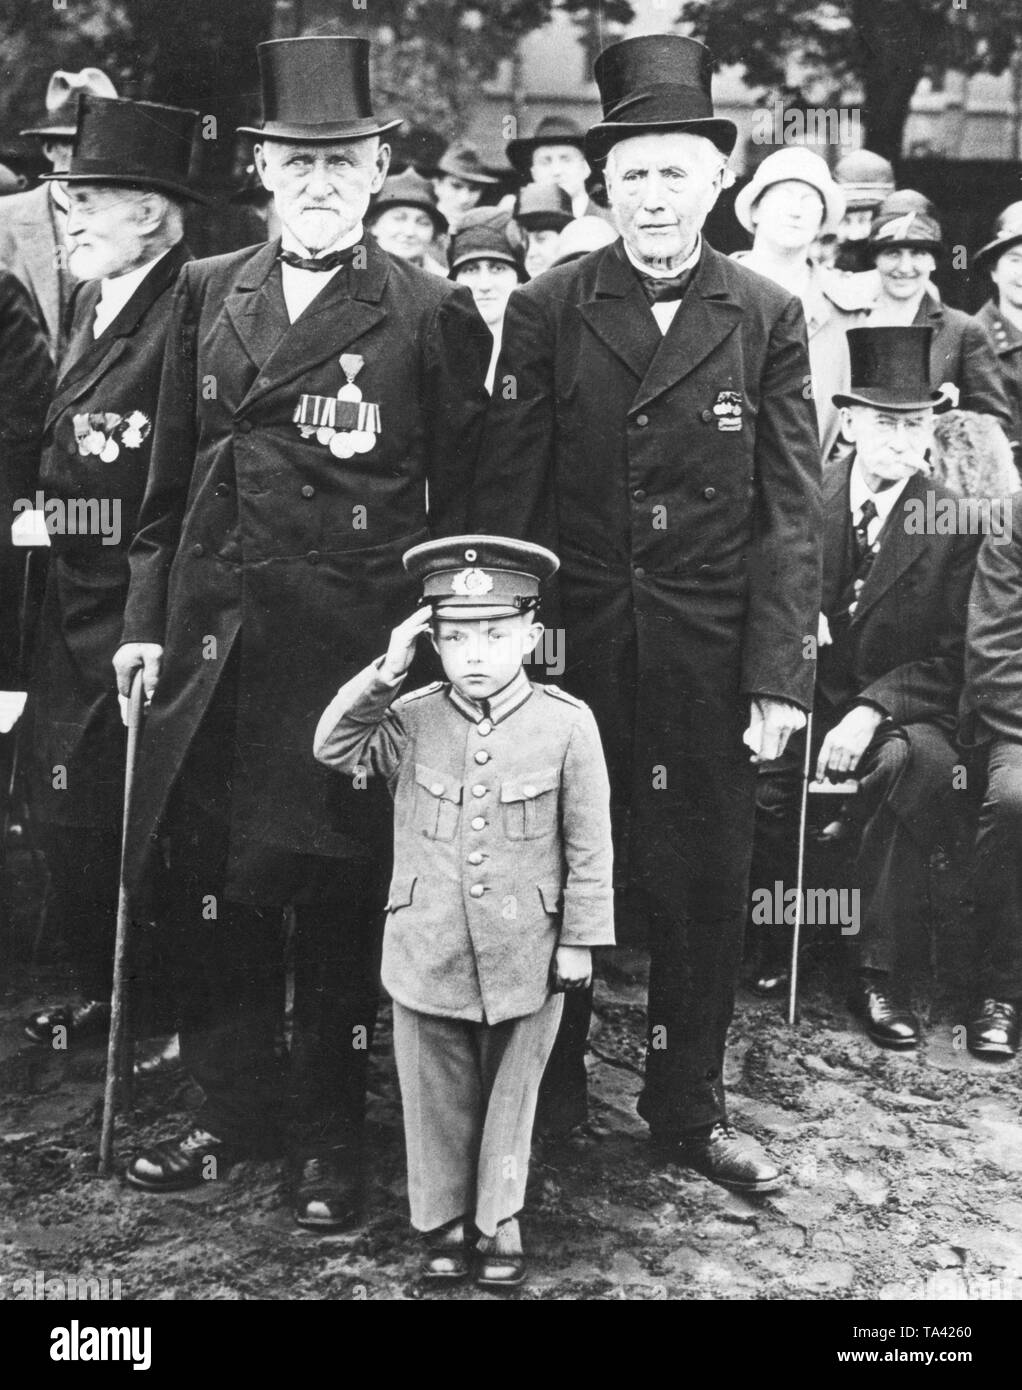 I veterani di guerra franco-prussiana e della I Guerra Mondiale sono arrivati a Potsdam per una riunione. Molti hanno avuto i loro figli e nipoti con loro che, proprio come questo ragazzino, apparso in ri-fatto Reichswehr uniformi. Foto Stock